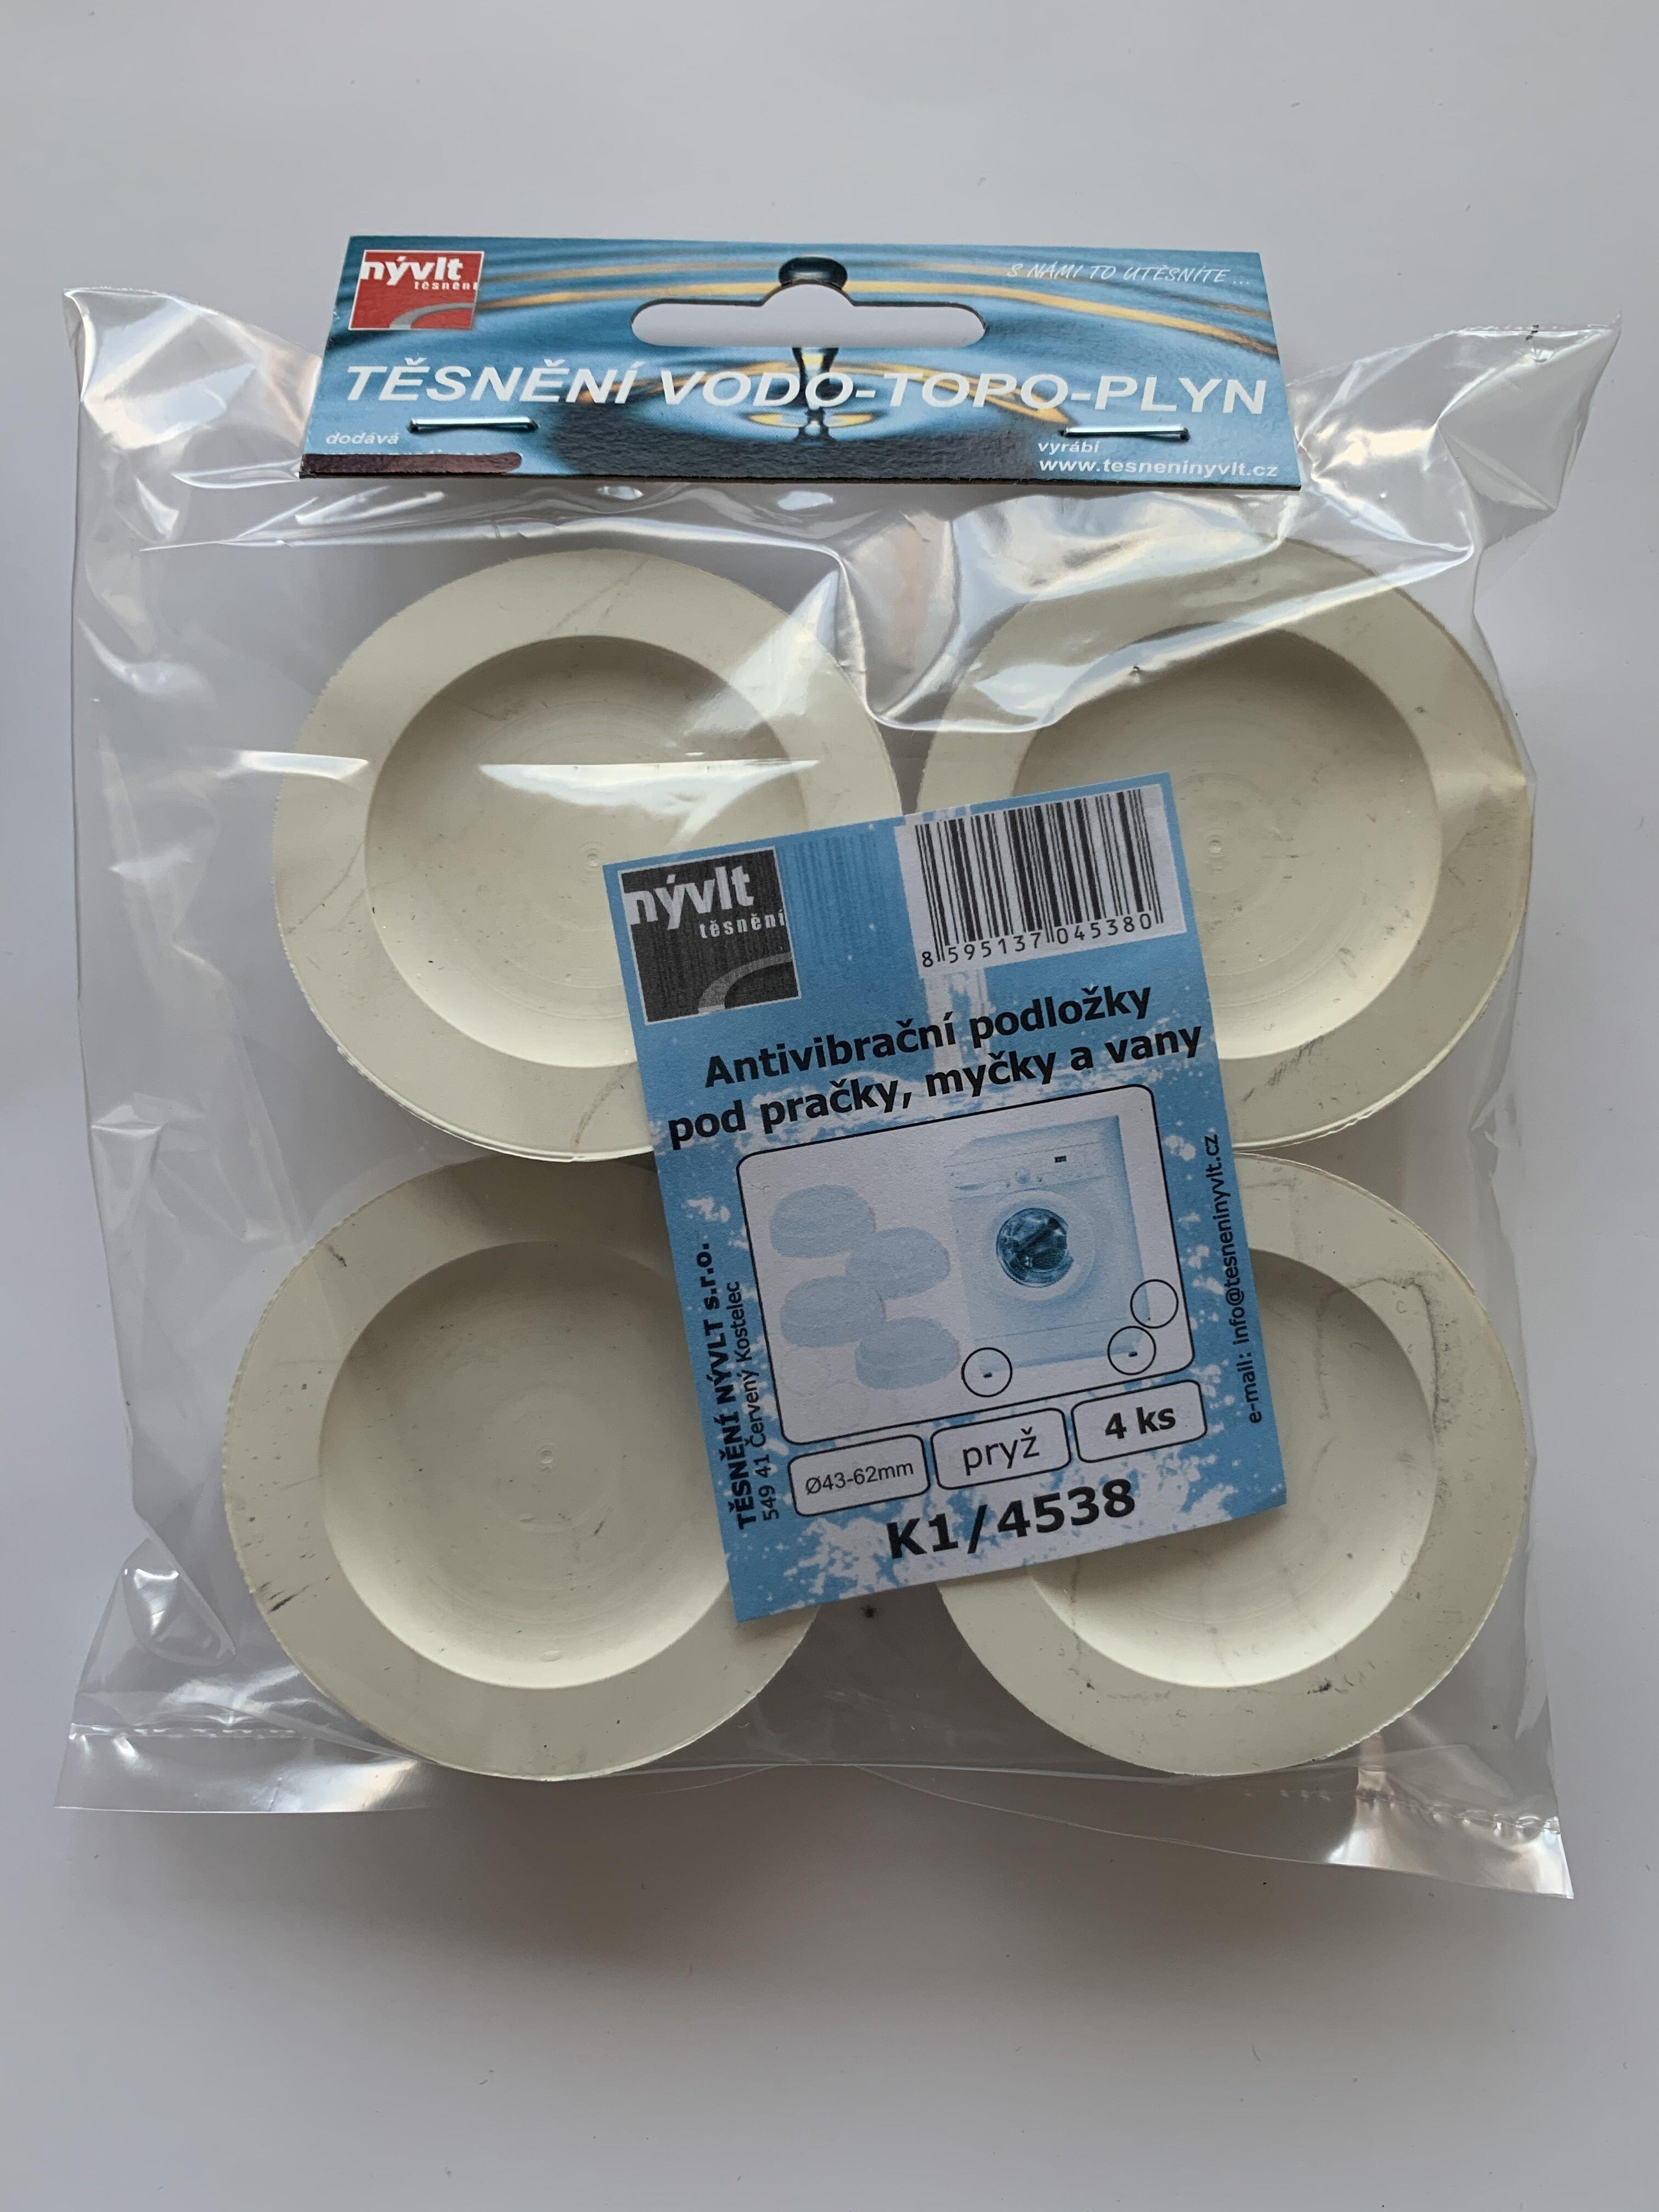 podložka antivibrační pro pračky,myčky,vany (4ks) K1/4538 0.19 Kg MAXMIX Sklad14 606056 26